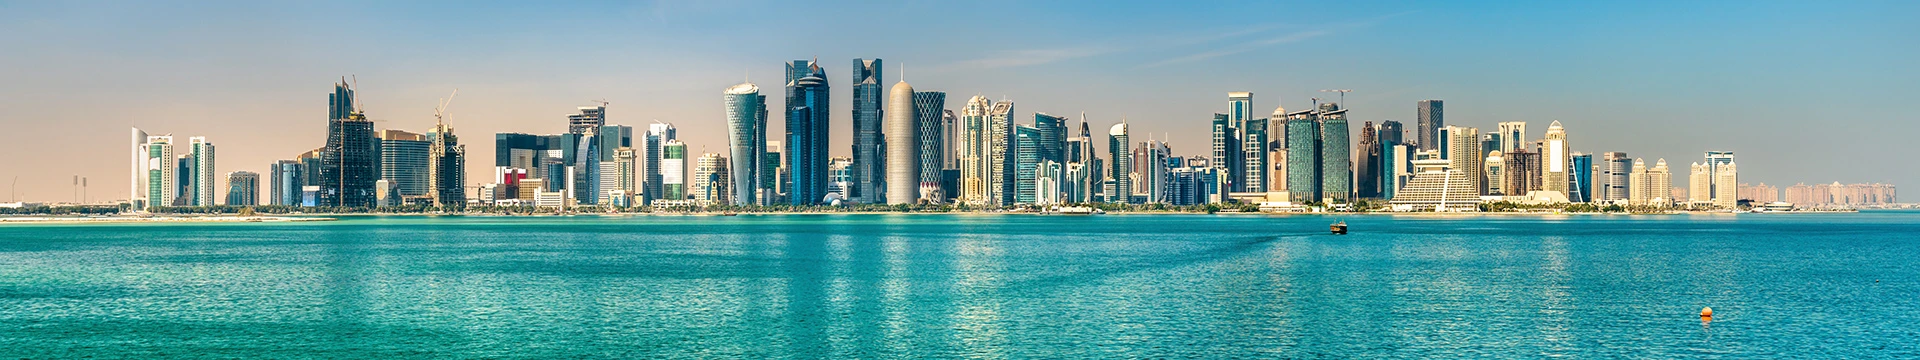 Hotels in Qatar